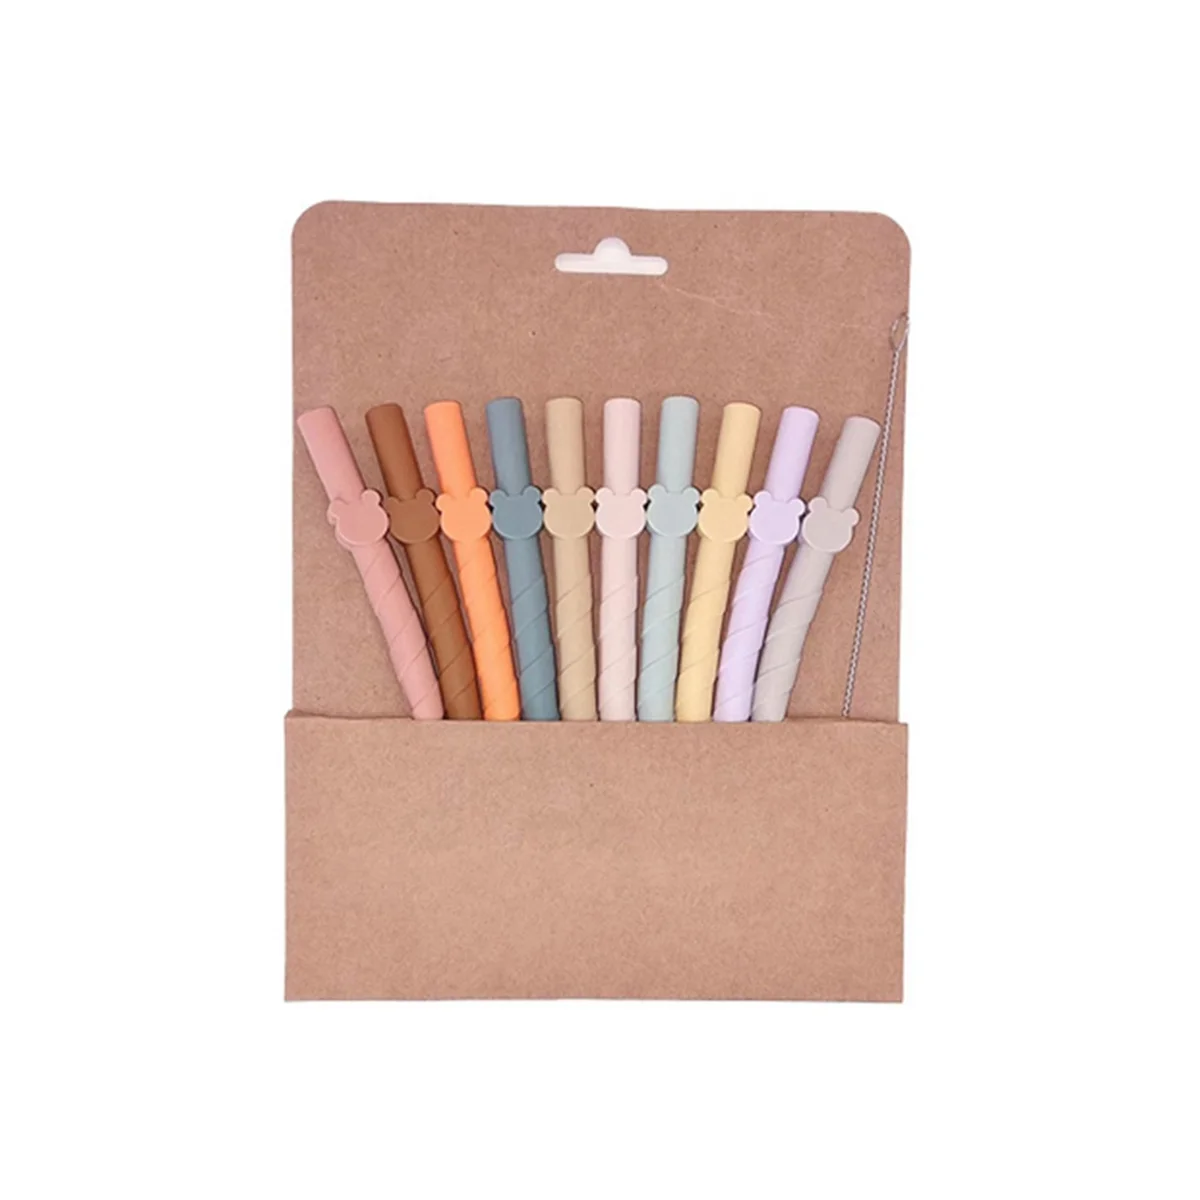 10 шт. разноцветных силиконовых соломинок одноразового использования, универсальные соломинки для смузи, складные для дома и путешествий